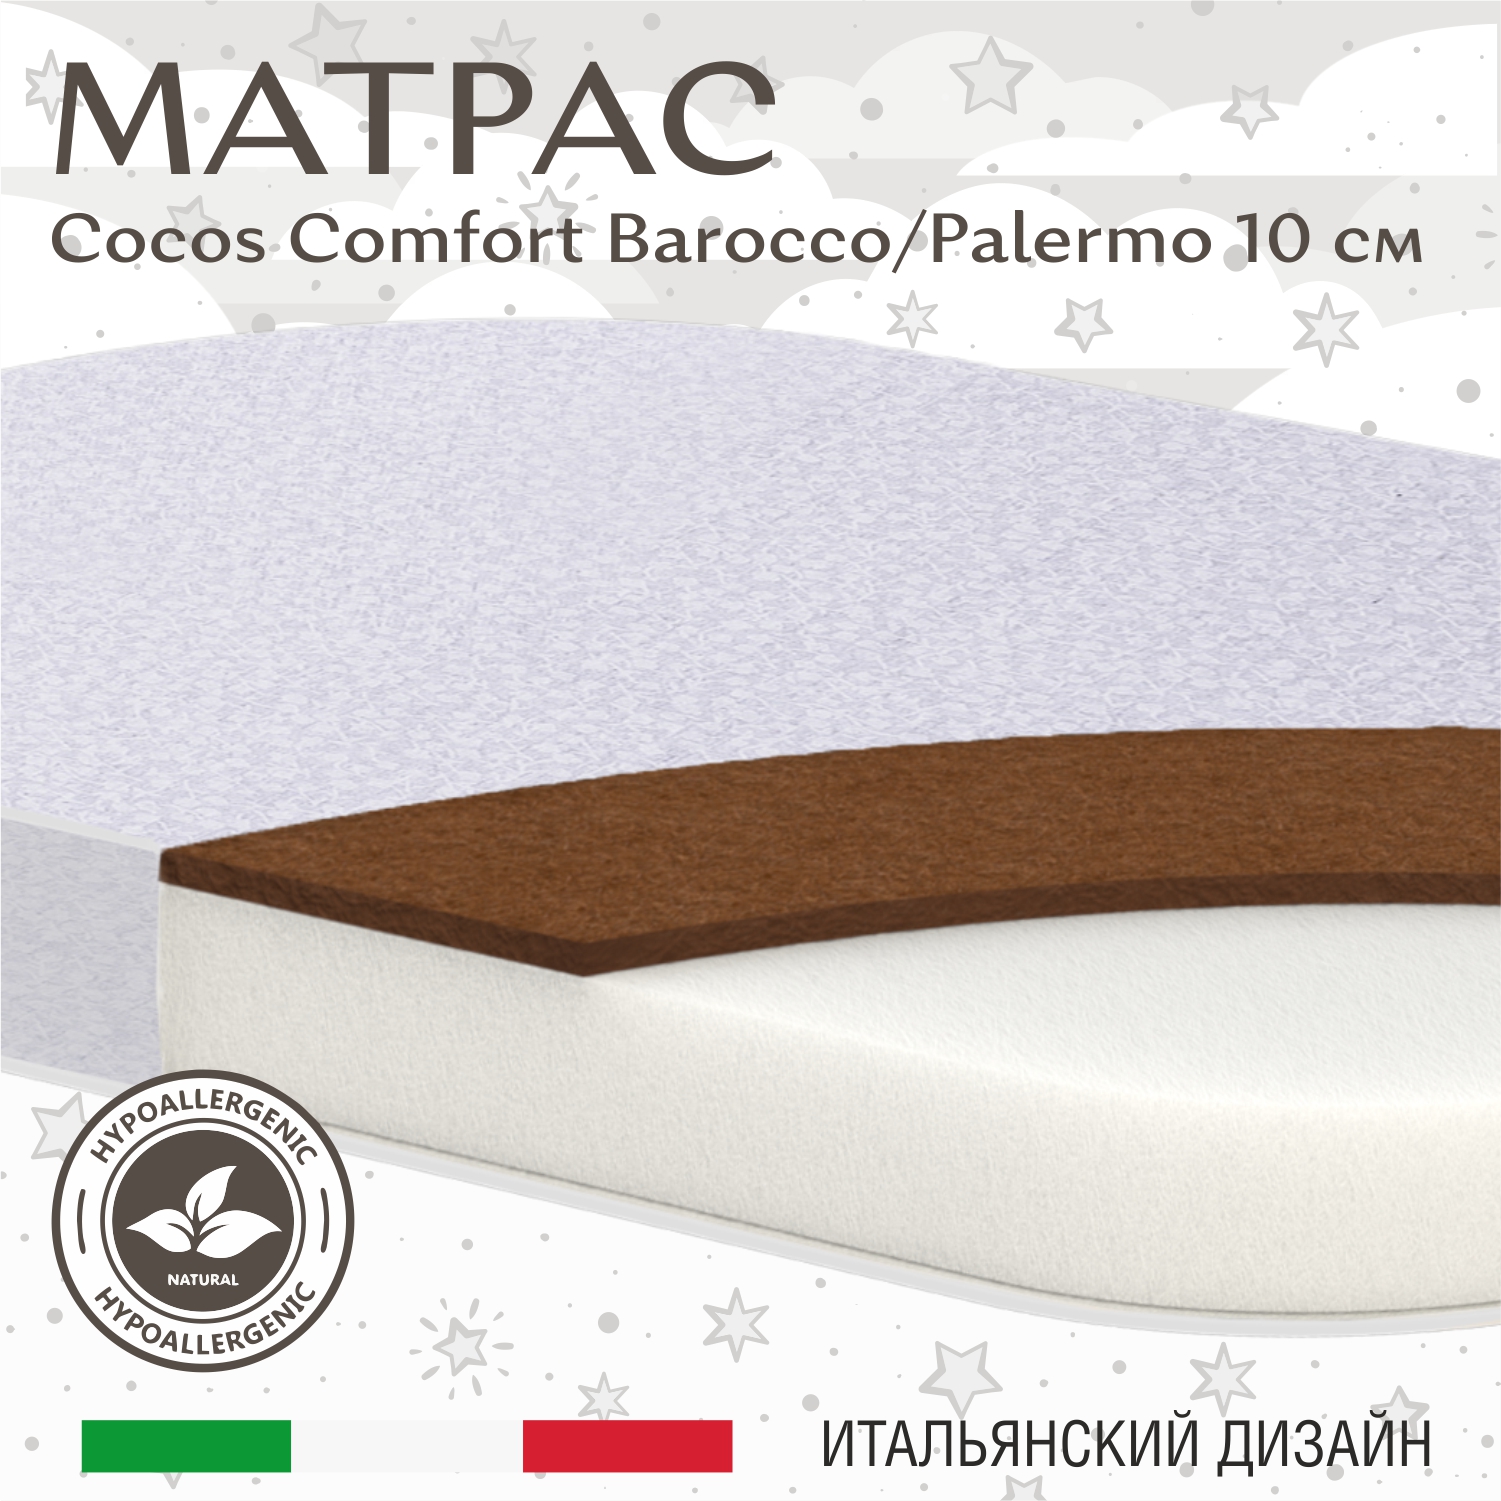 Матрас в кроватку Sweet Baby COCOS Comfort овальный 119X59х10 Barocco, Palermo (экобязь)